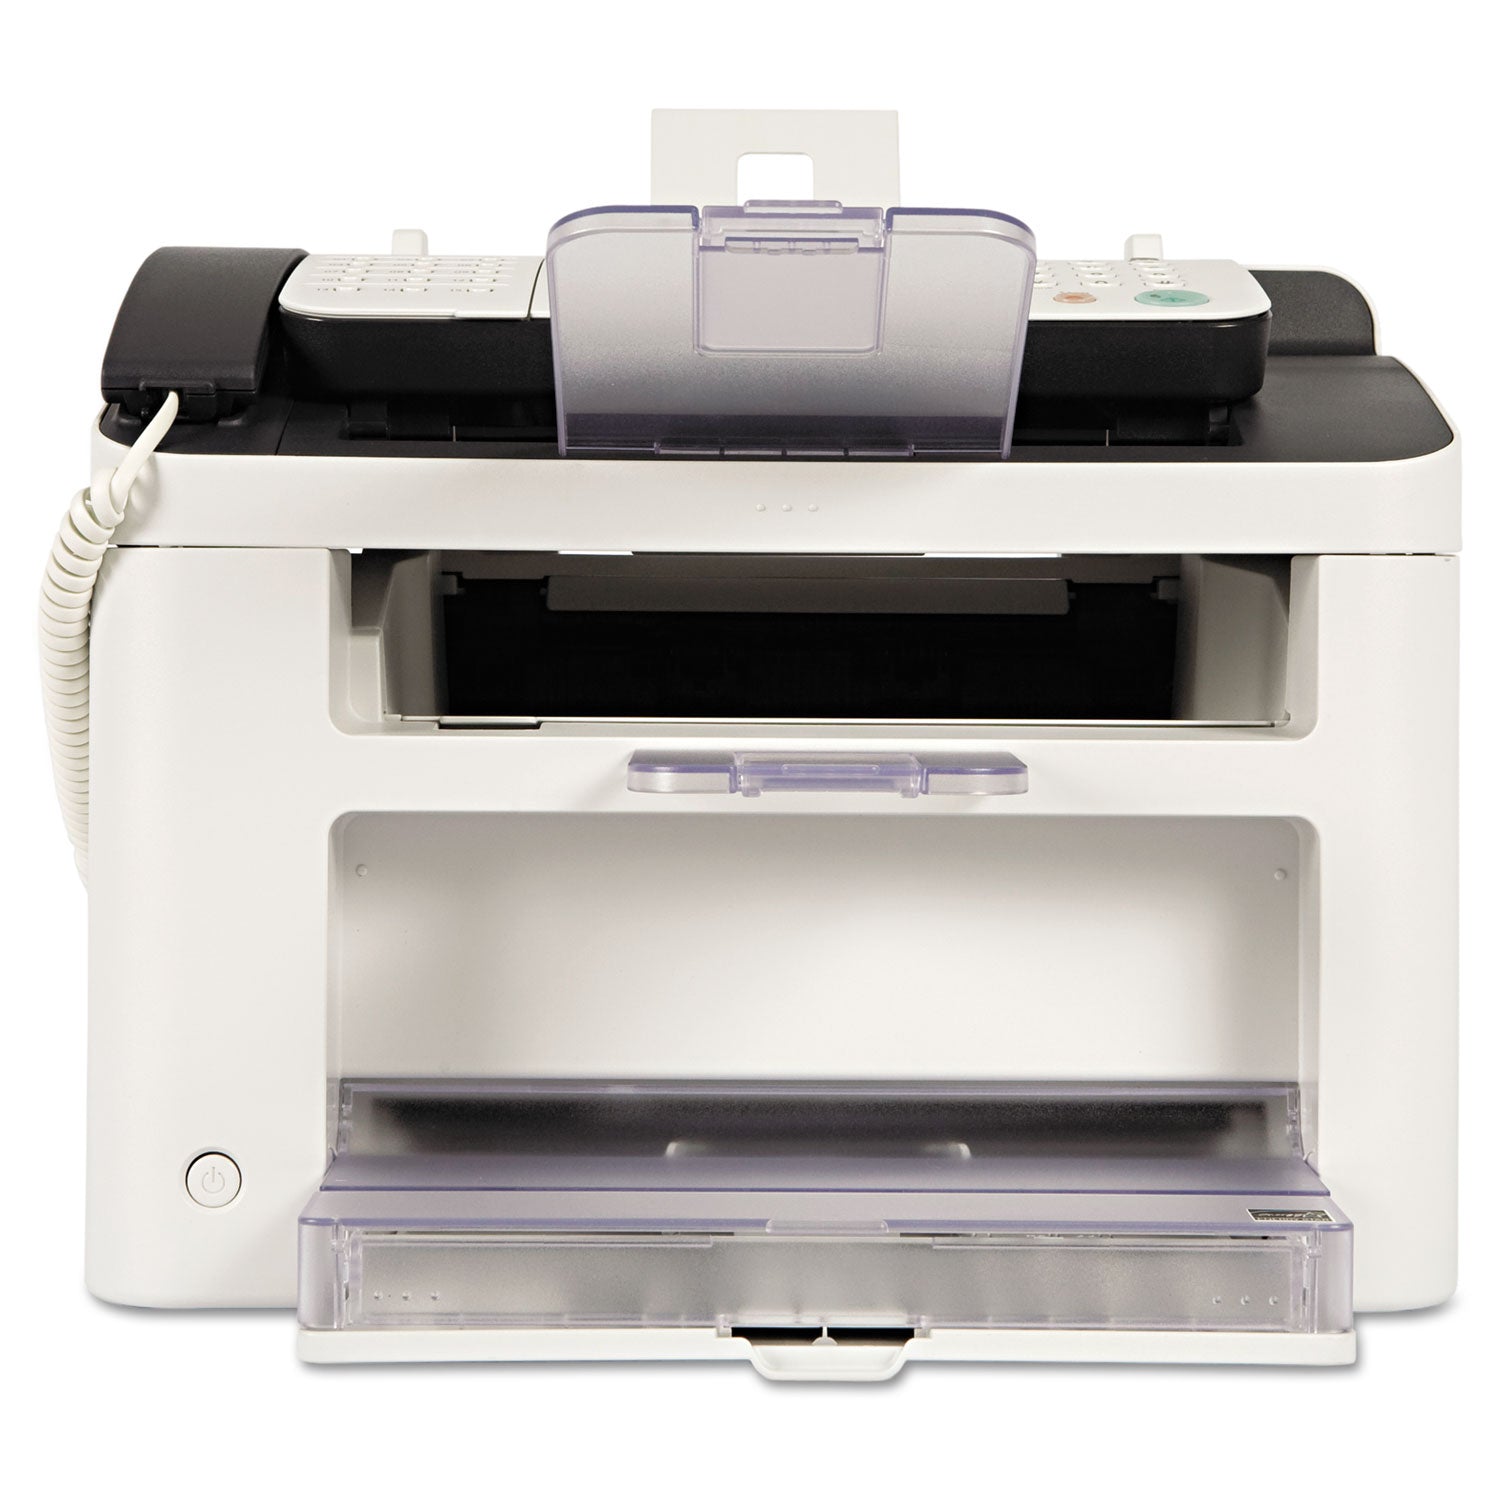 faxphone-l100-laser-fax-machine-copy-fax-print_cnm5258b001 - 2